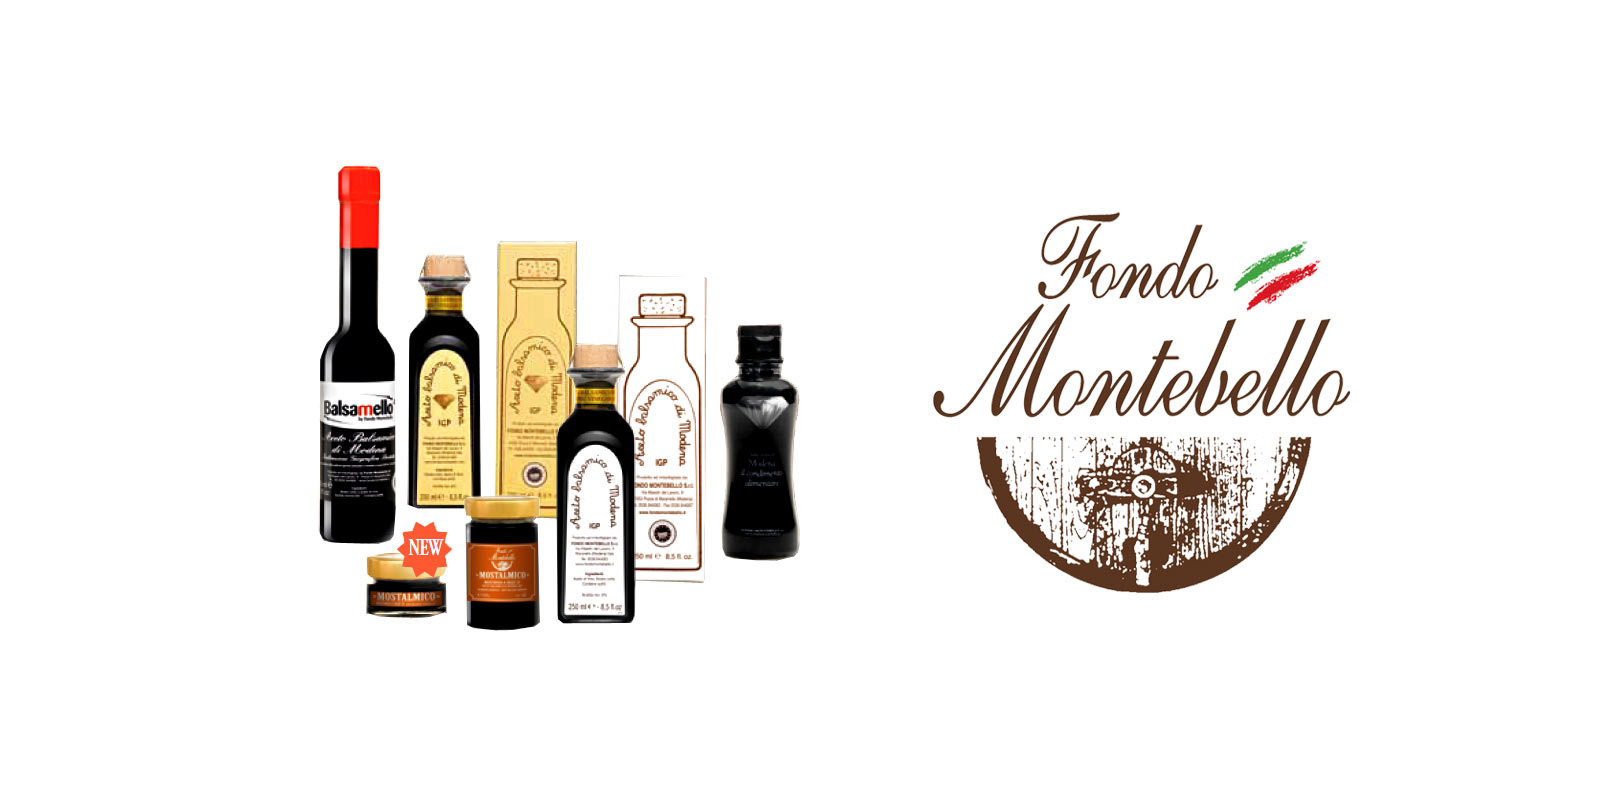 Aceto Balsamico Fondo Montebello Fondo Montebello gebruikt oude en traditionele productiemethoden om een uitstekende balsamicoazijn uit de Maranello-regio in Italie te produceren.